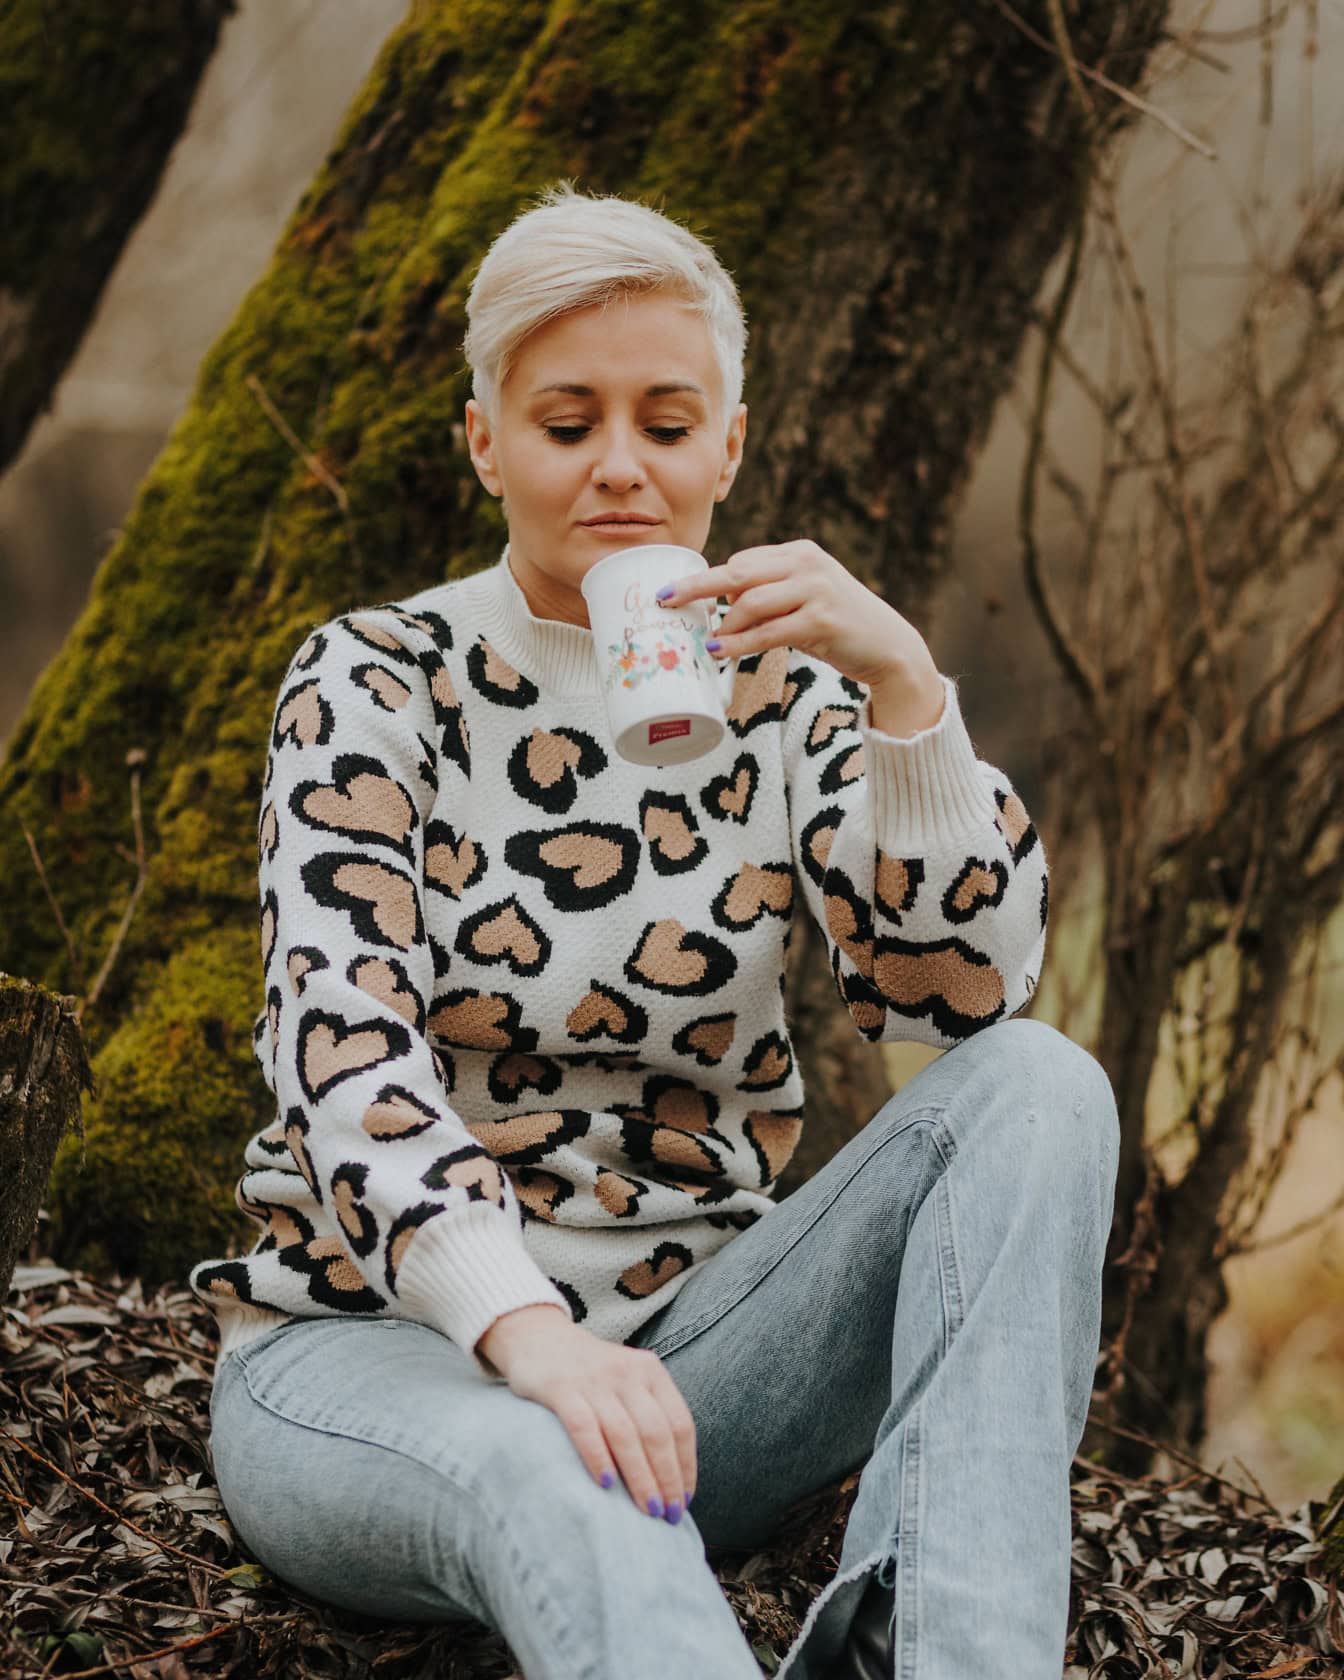 Kvinna med kort blont hår som sitter på en stubbe i tröja och blekta byxor och och dricker från en mugg